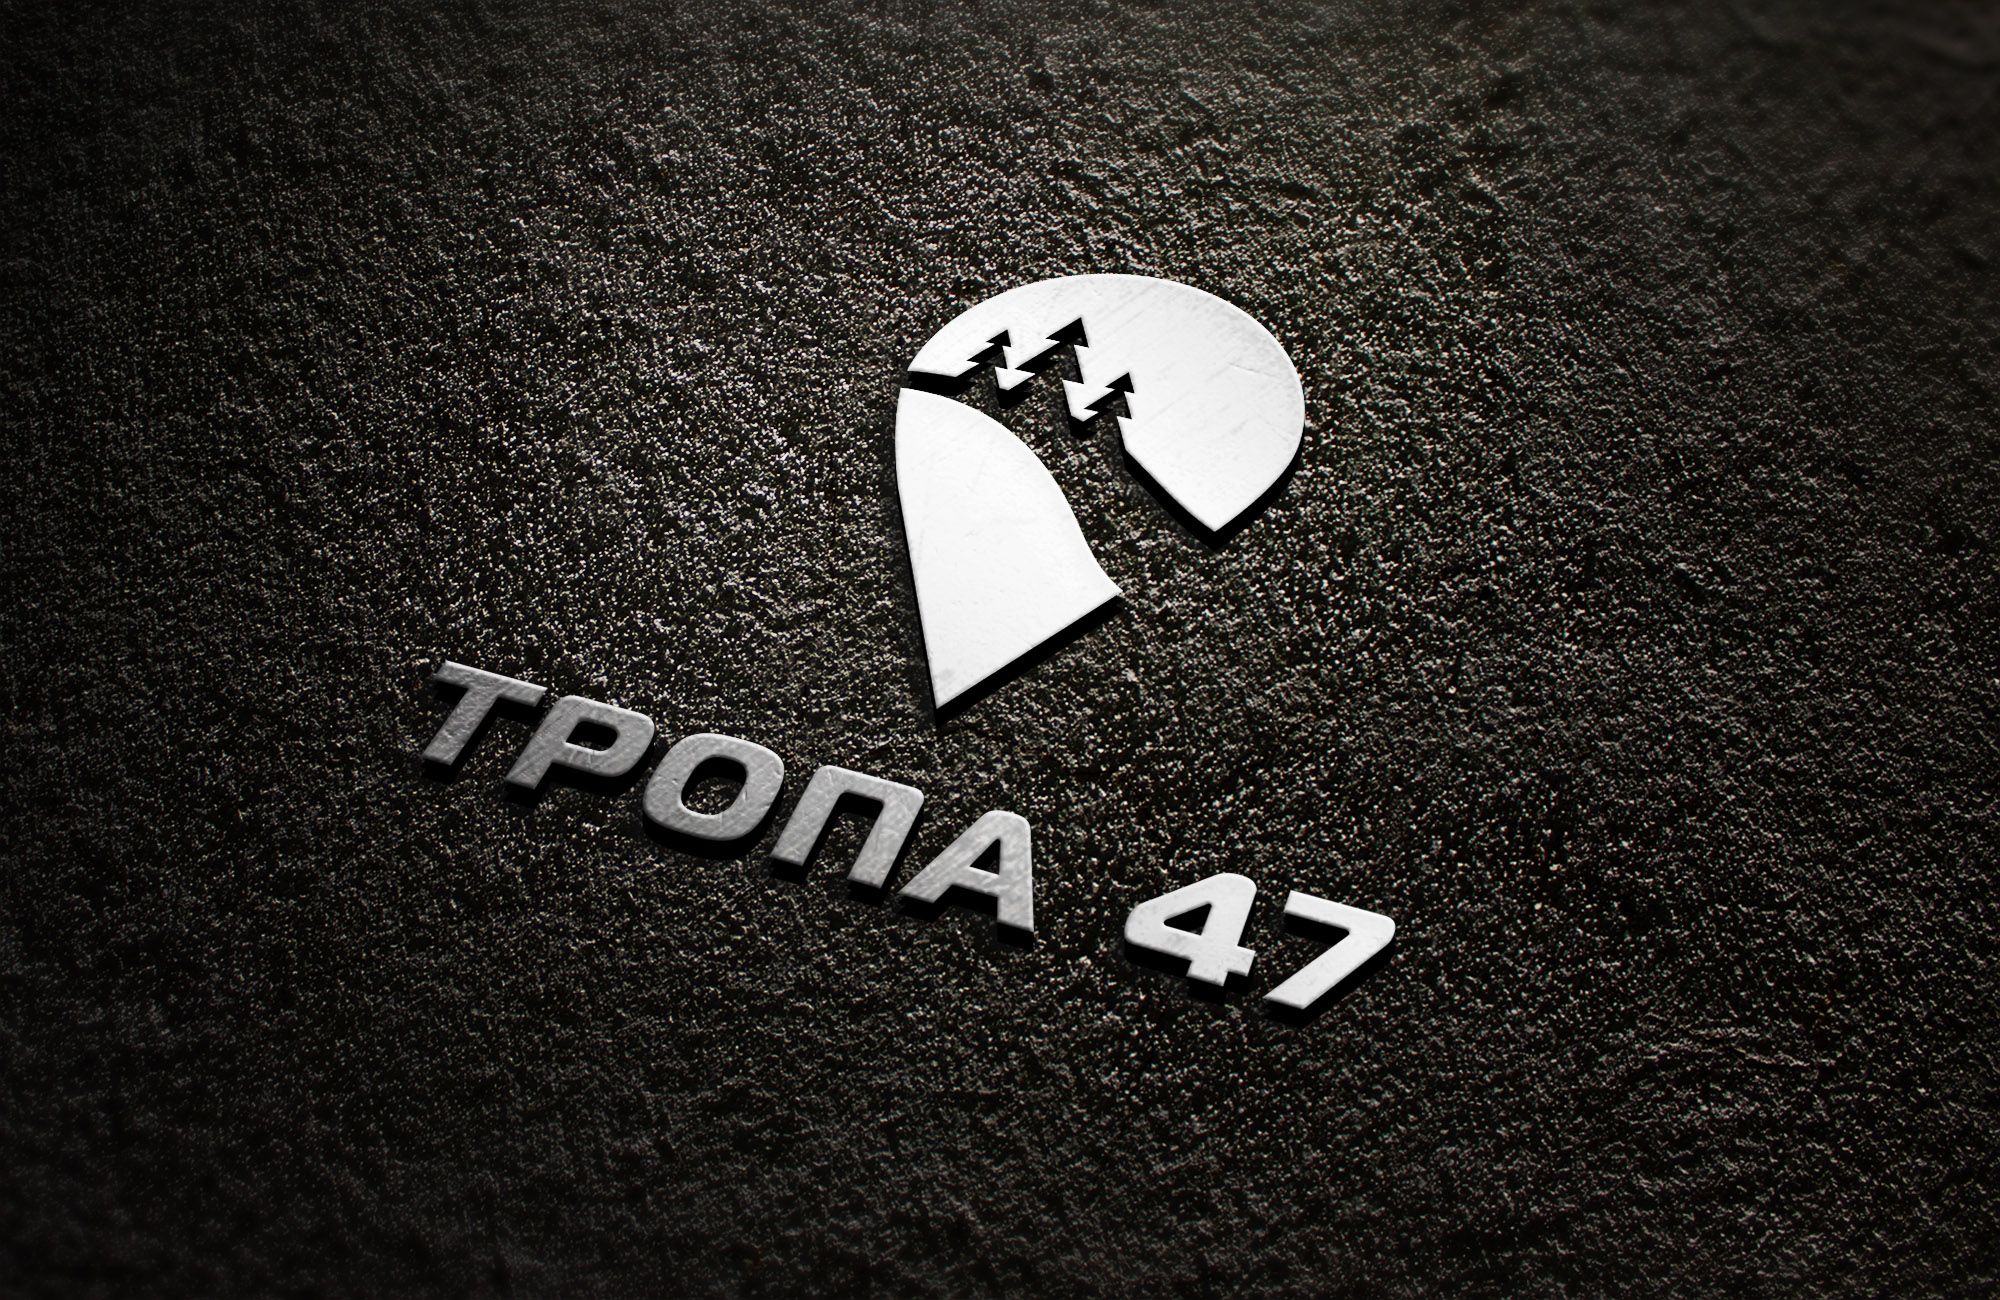 Логотип для Тропа 47 - дизайнер asketksm